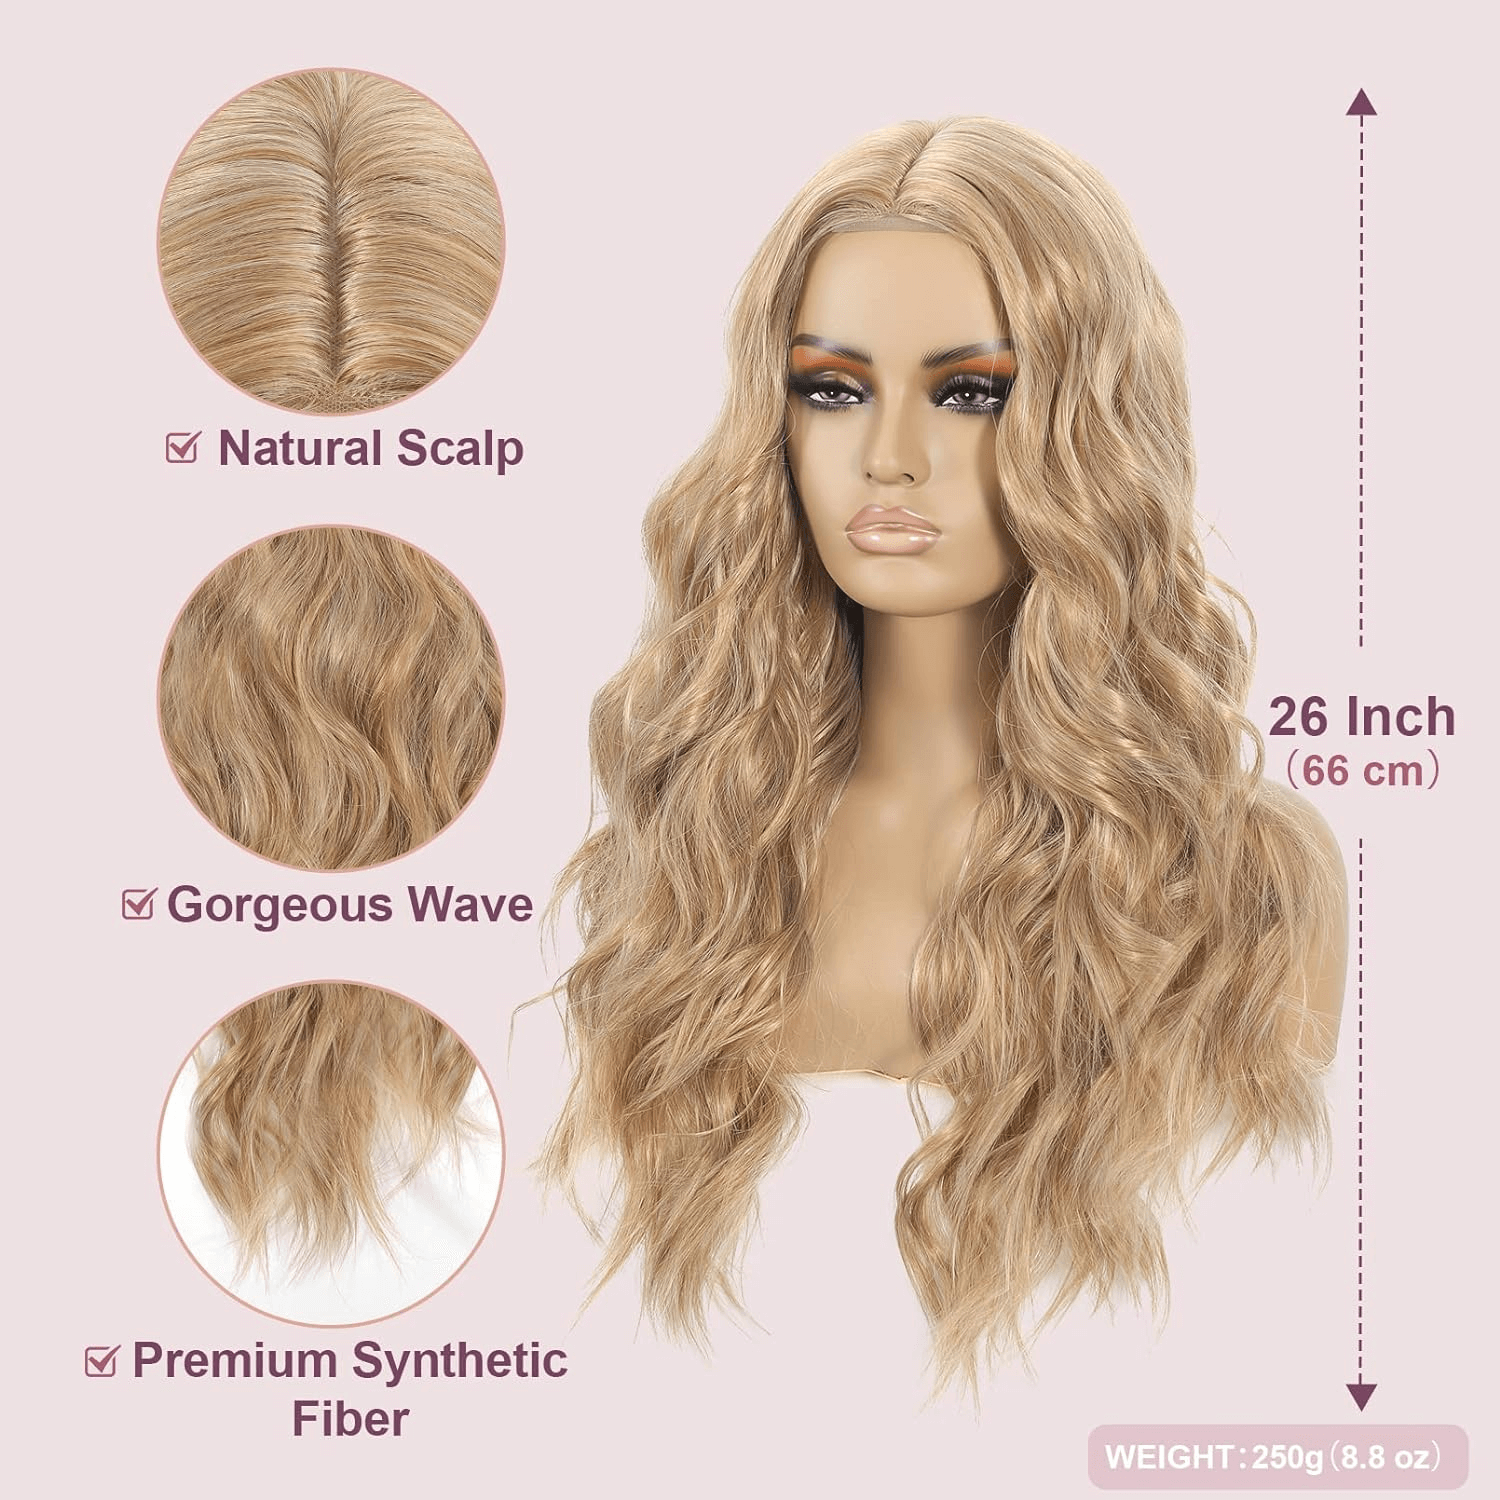 Blonde Long Wavy Wig for Women, Body Wave 26